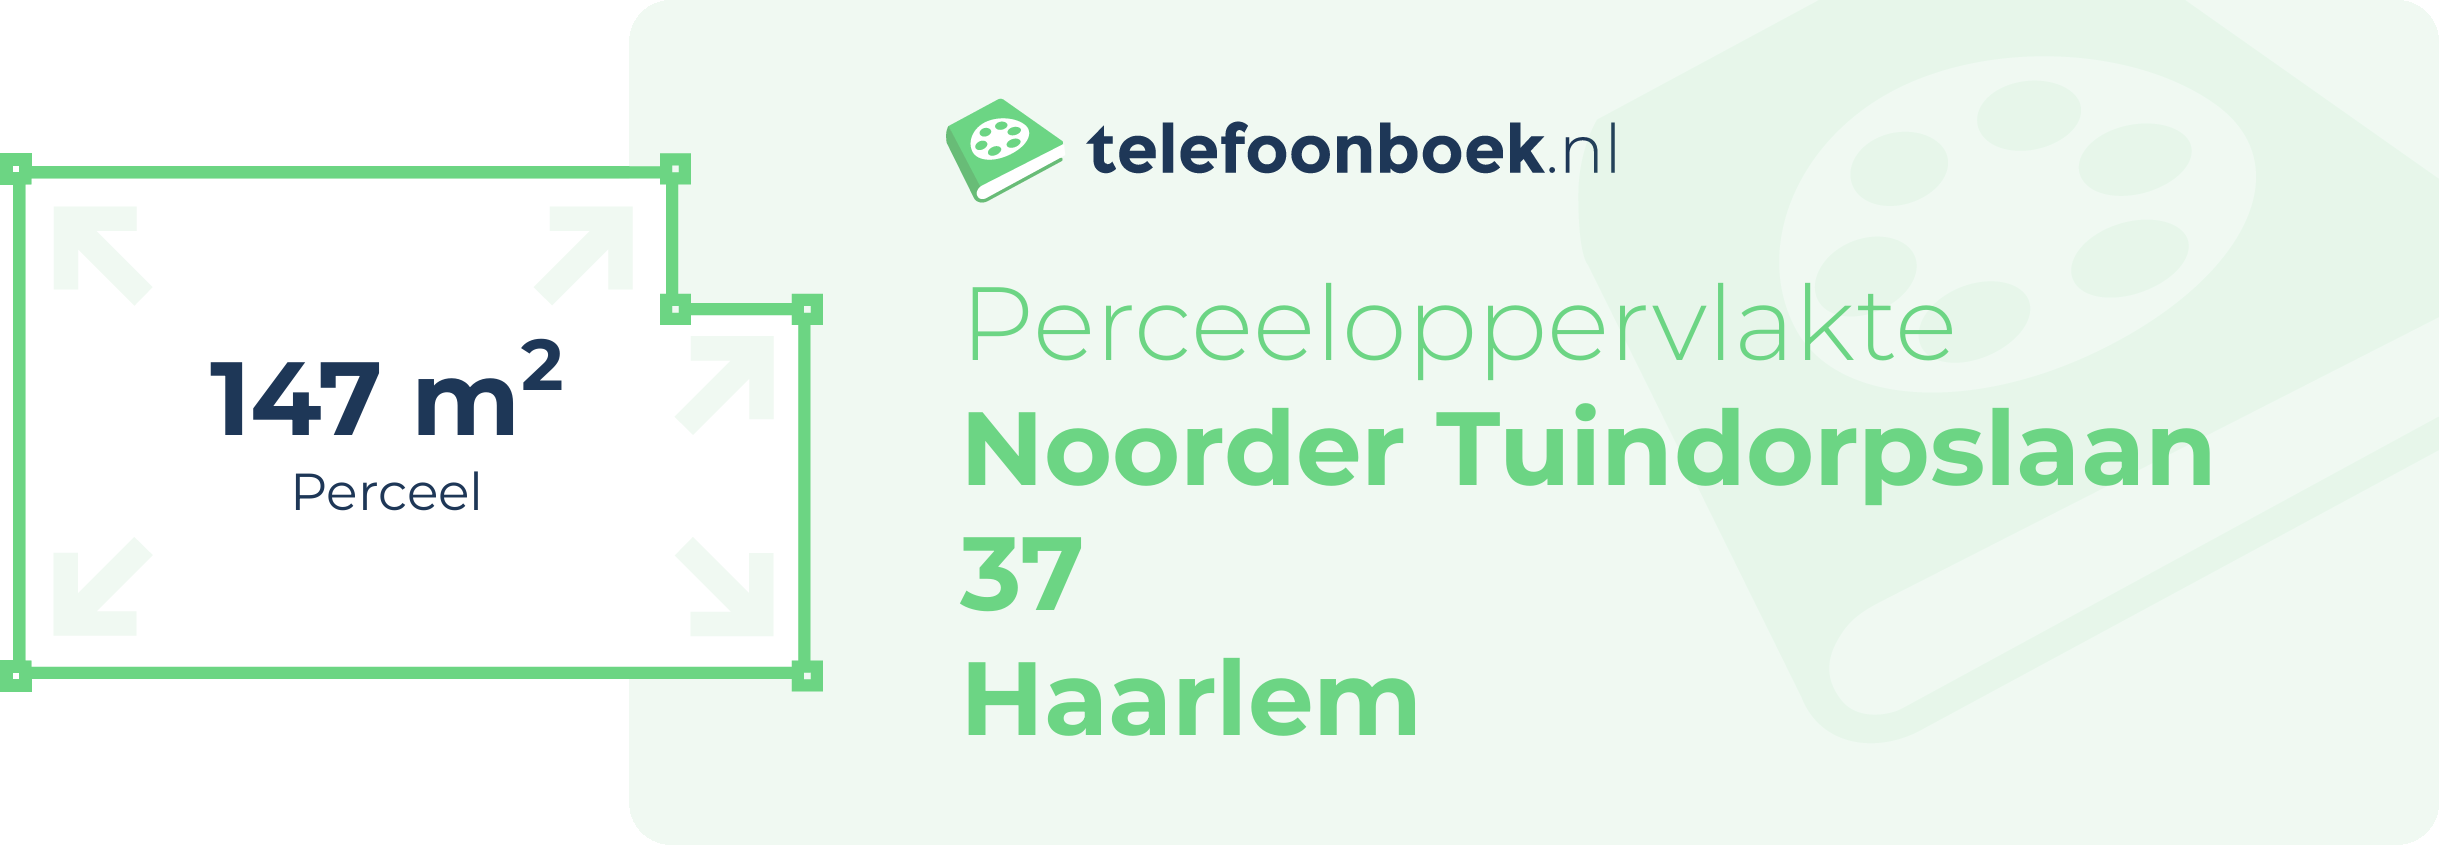 Perceeloppervlakte Noorder Tuindorpslaan 37 Haarlem